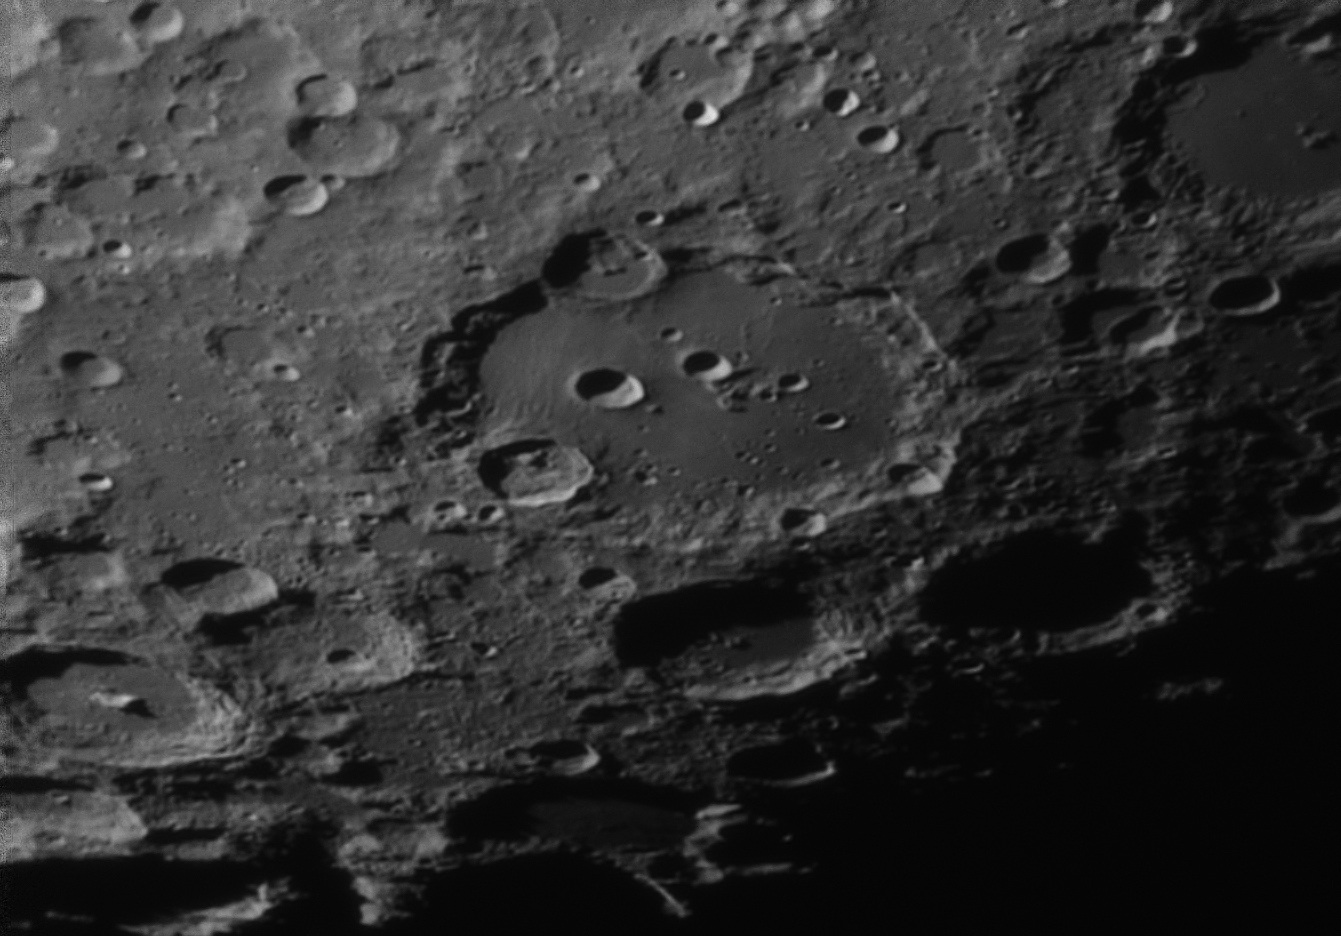 The crater Clavius...